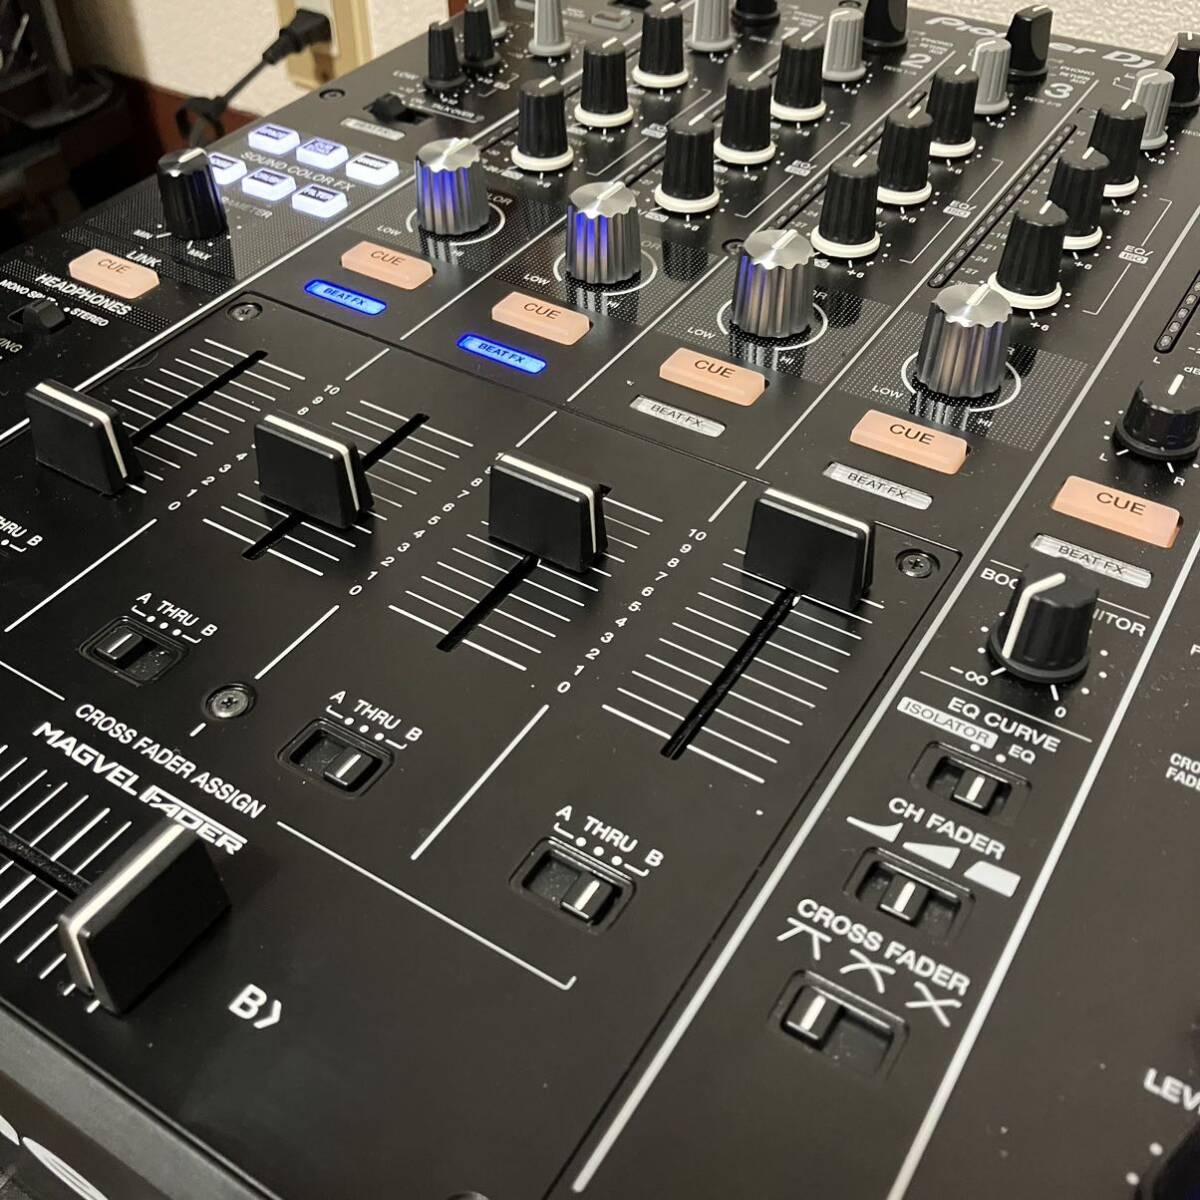 Pioneer DJ Professional DJ mixer DJM-900NXS2 Night Club DJ machinery music fes. standard machinery 